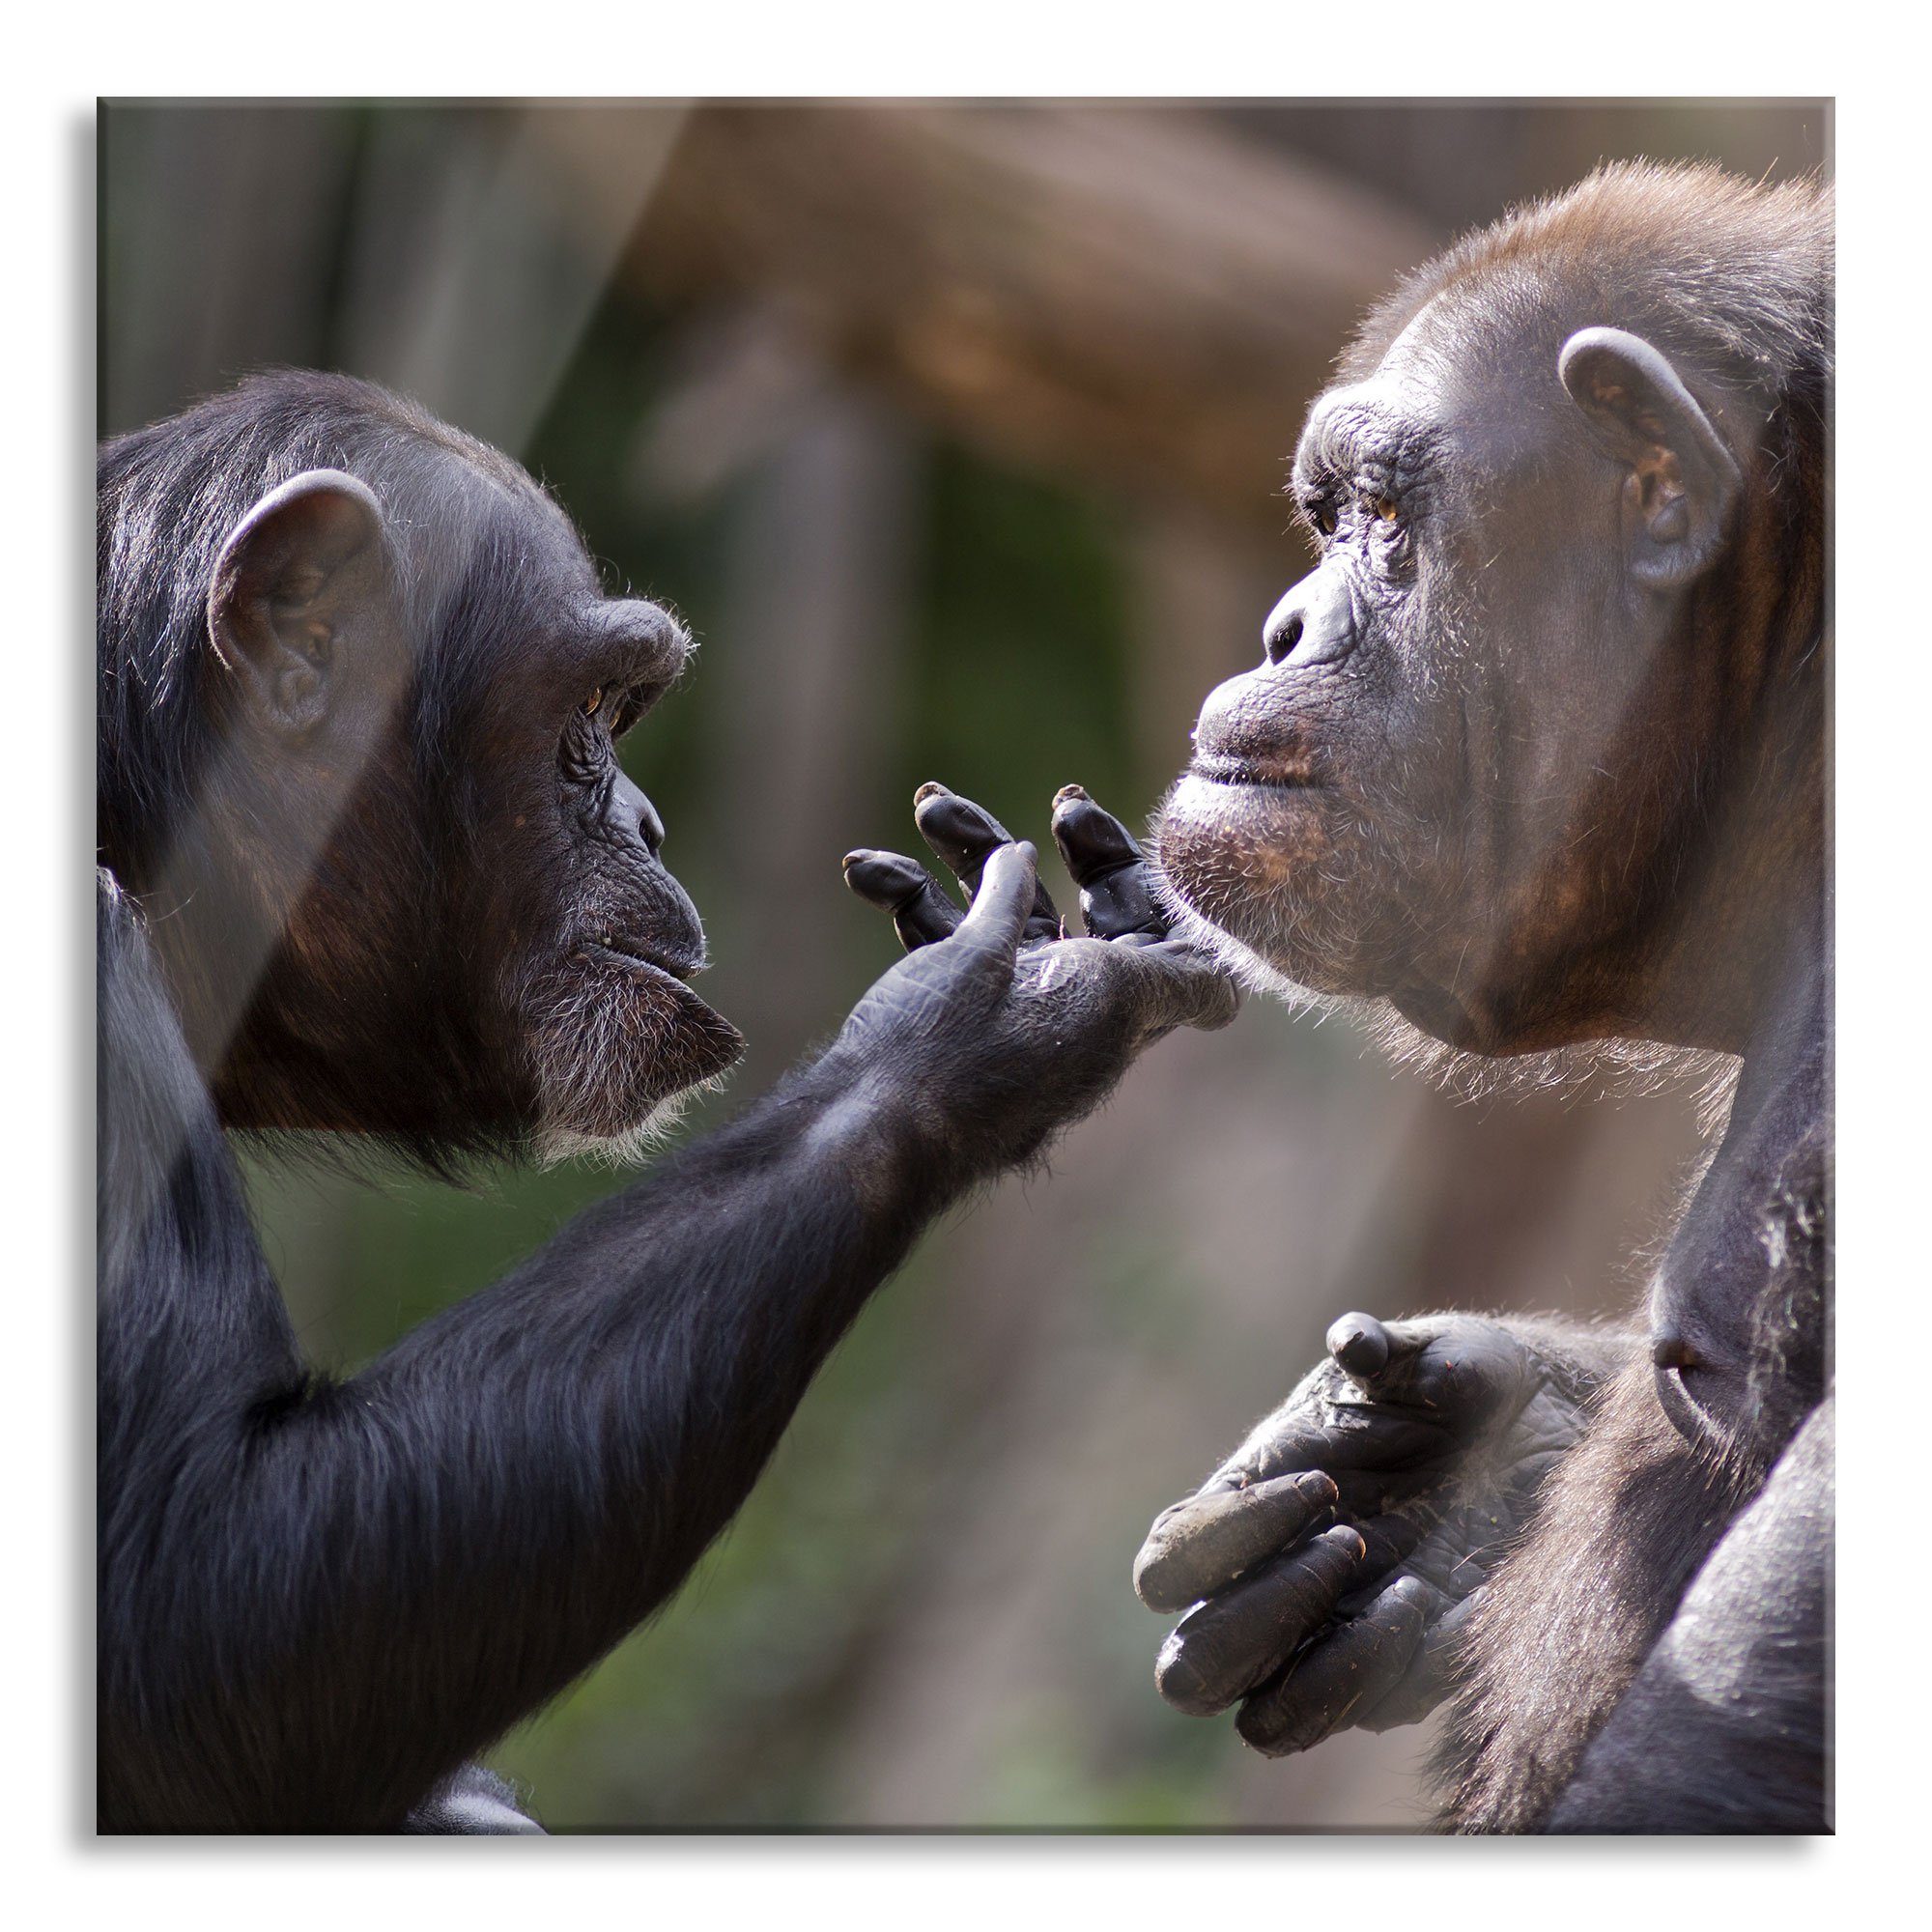 Pixxprint Glasbild Schimpansen Freundschaft, Schimpansen Freundschaft (1 St), Glasbild aus Echtglas, inkl. Aufhängungen und Abstandshalter